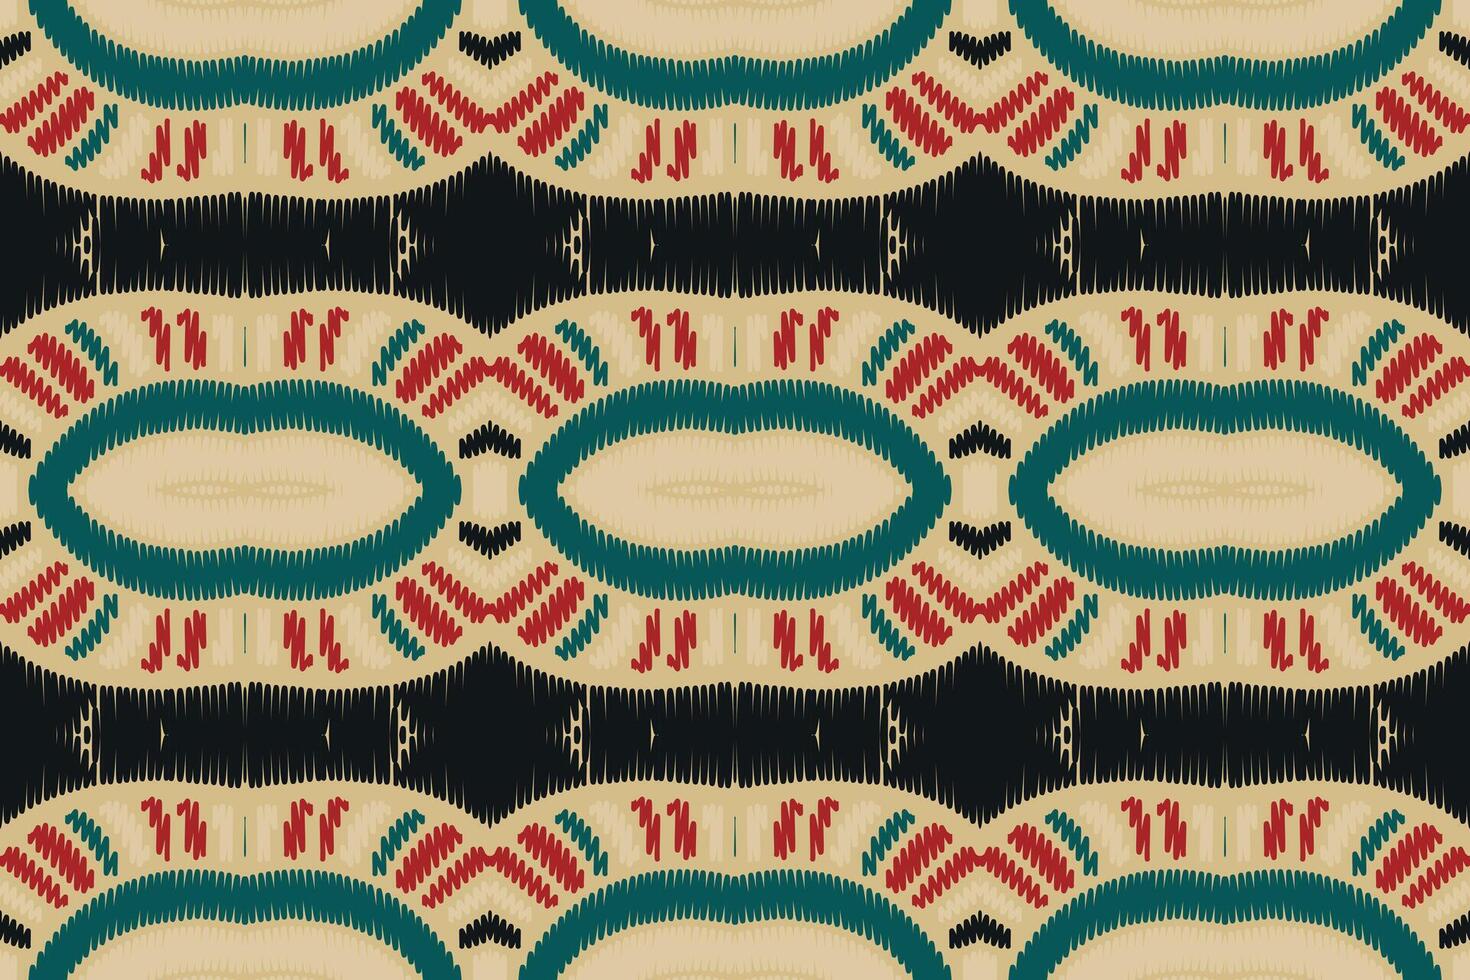 motif ikat en tribal. géométrique ethnique traditionnel. style rayé mexicain. conception pour le fond, papier peint, illustration vectorielle, tissu, vêtements, batik, tapis, broderie. vecteur